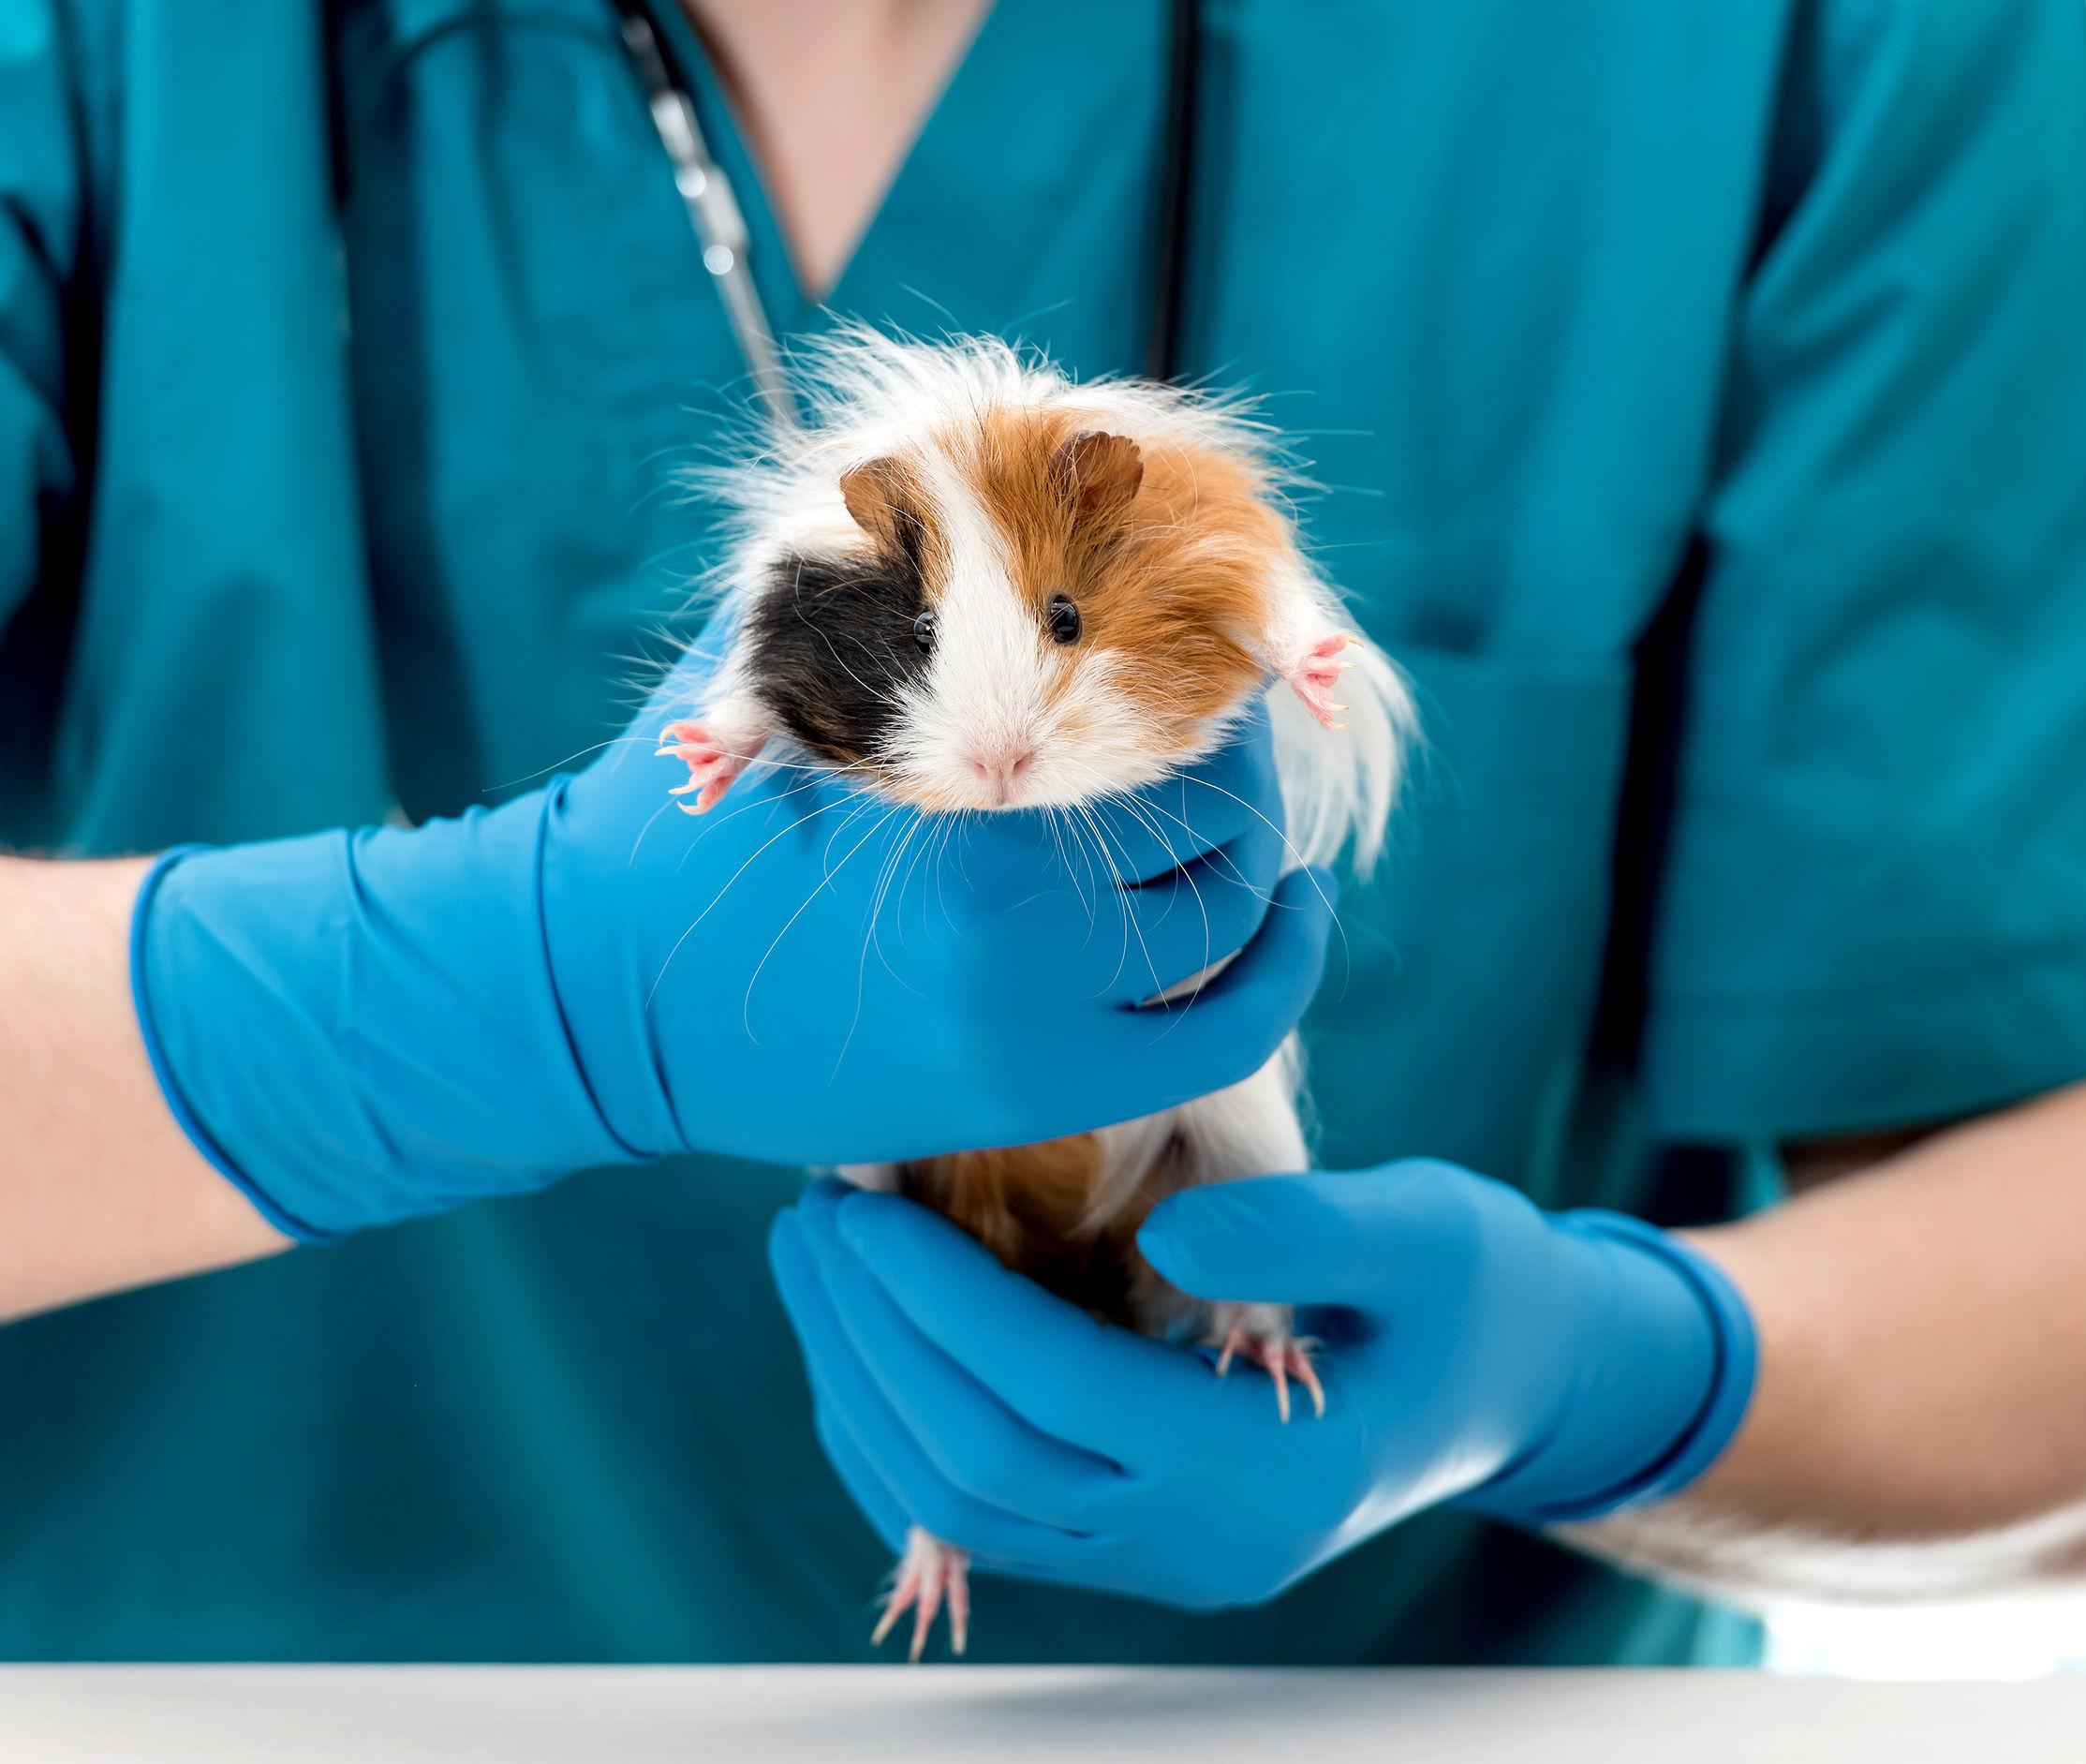 La Commissione europea sostiene l’eliminazione graduale dell’uso di animali negli esperimenti e nei test chimici, ma ignora i desideri dei cittadini sui cosmetici (ISDE News)